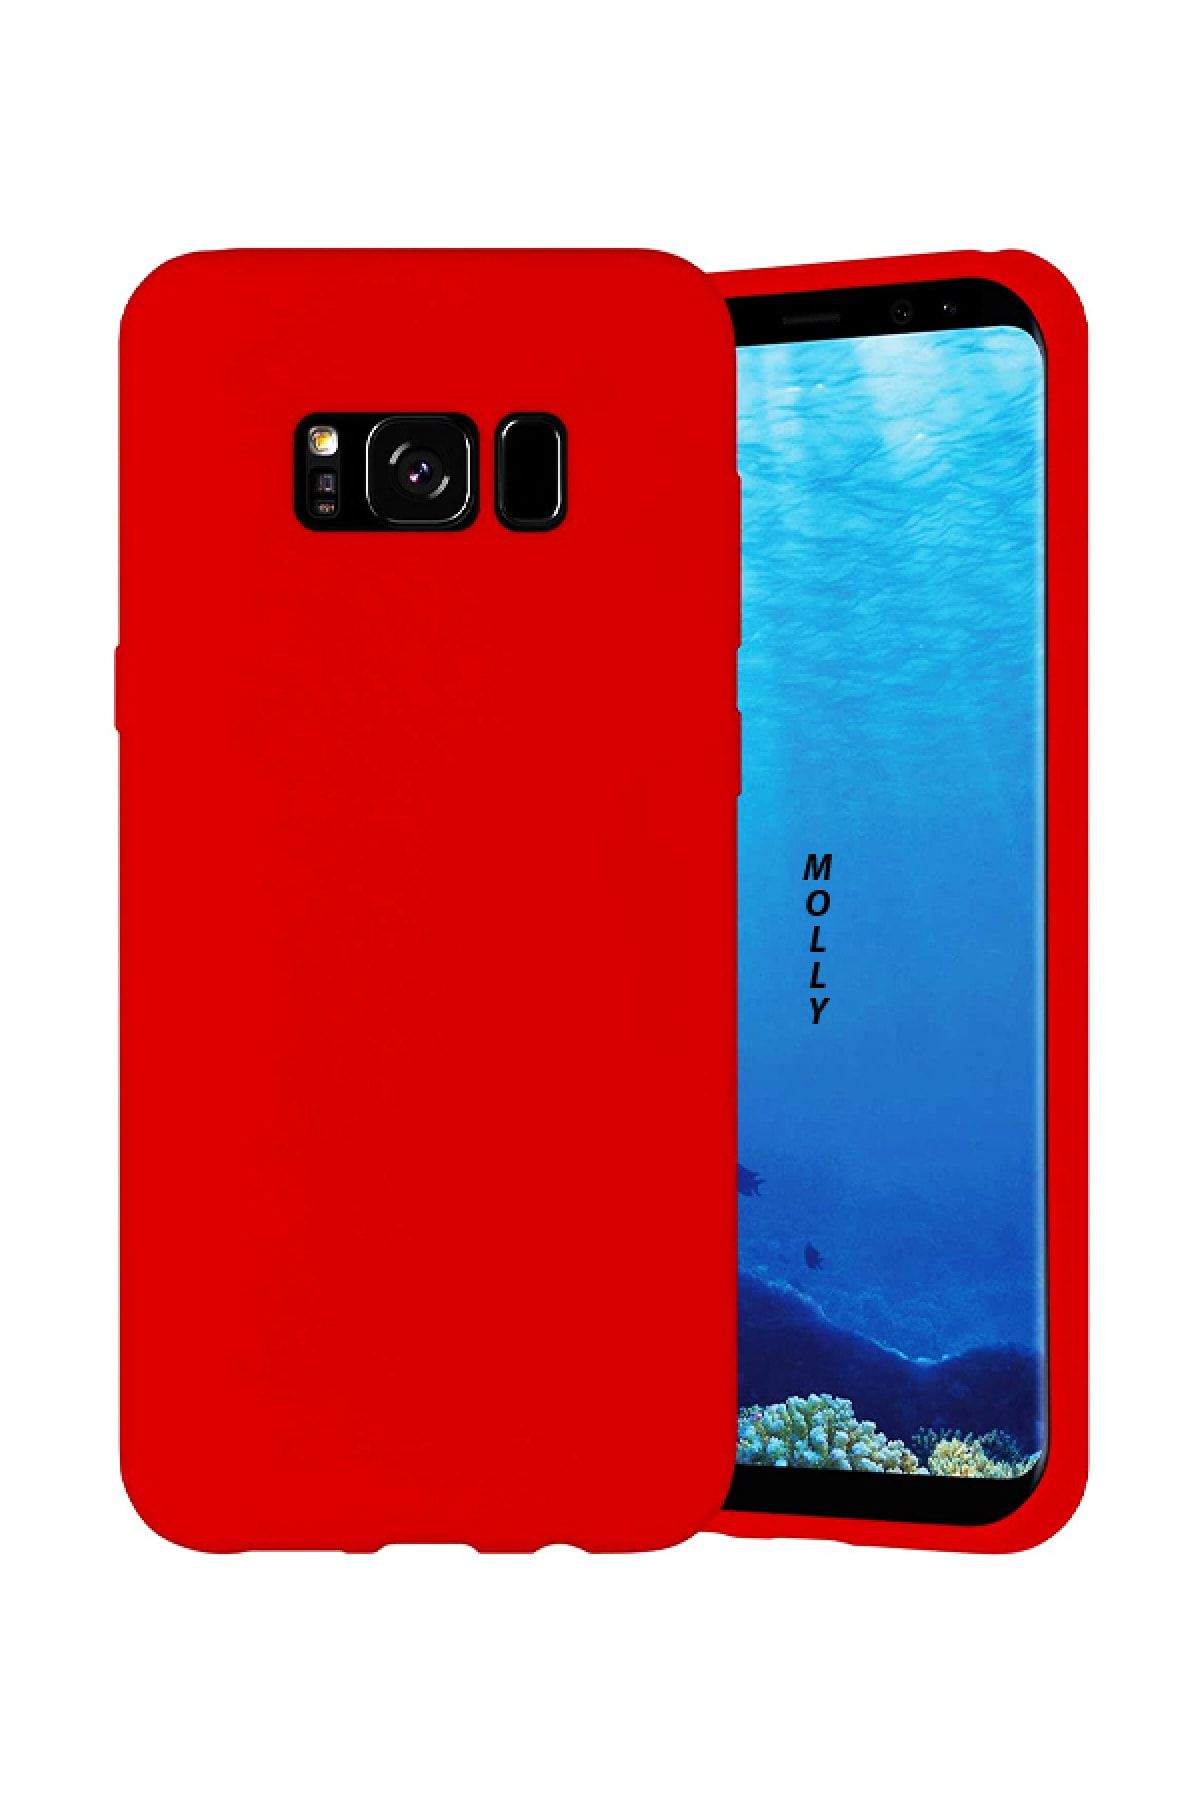 Molly Galaxy S8 Plus Uyumlu Şeker Kırmızısı Liquid Pastel Kılıf